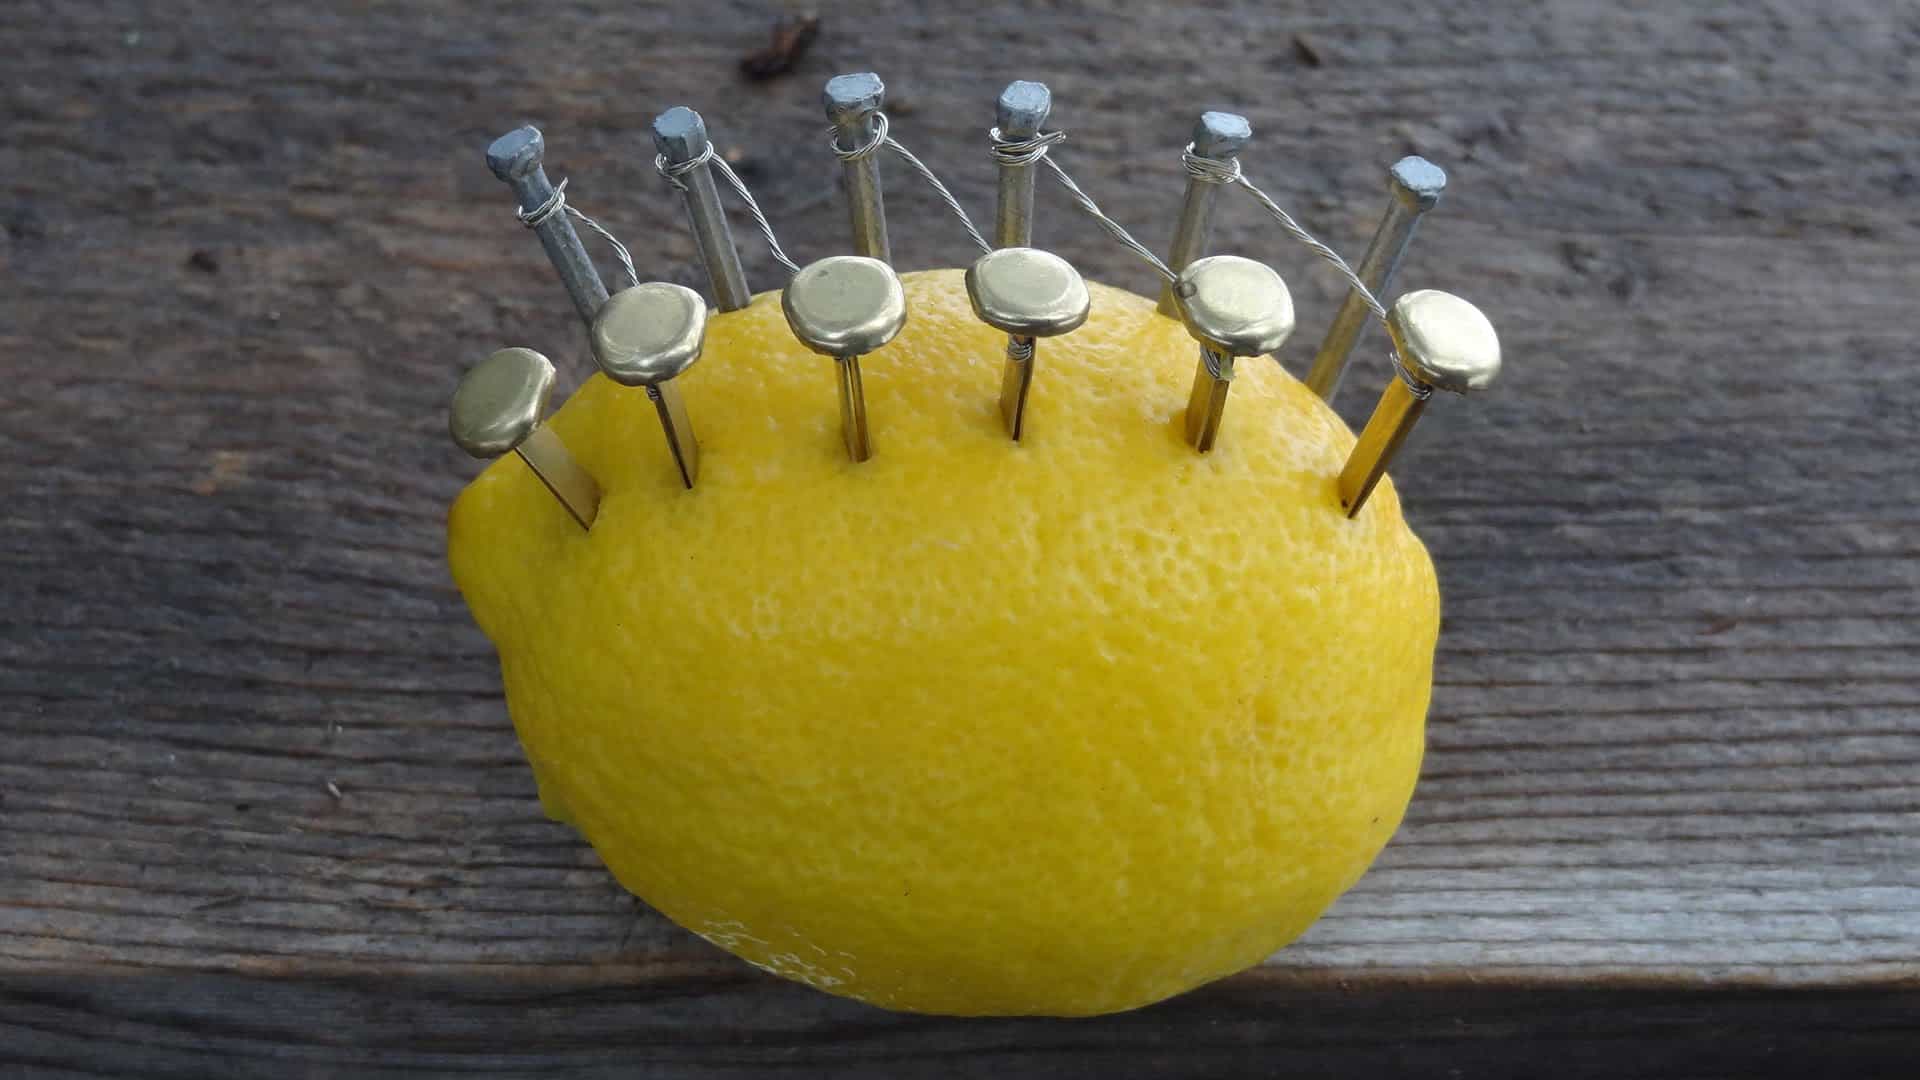 Hoe maak je vuur met een citroen?